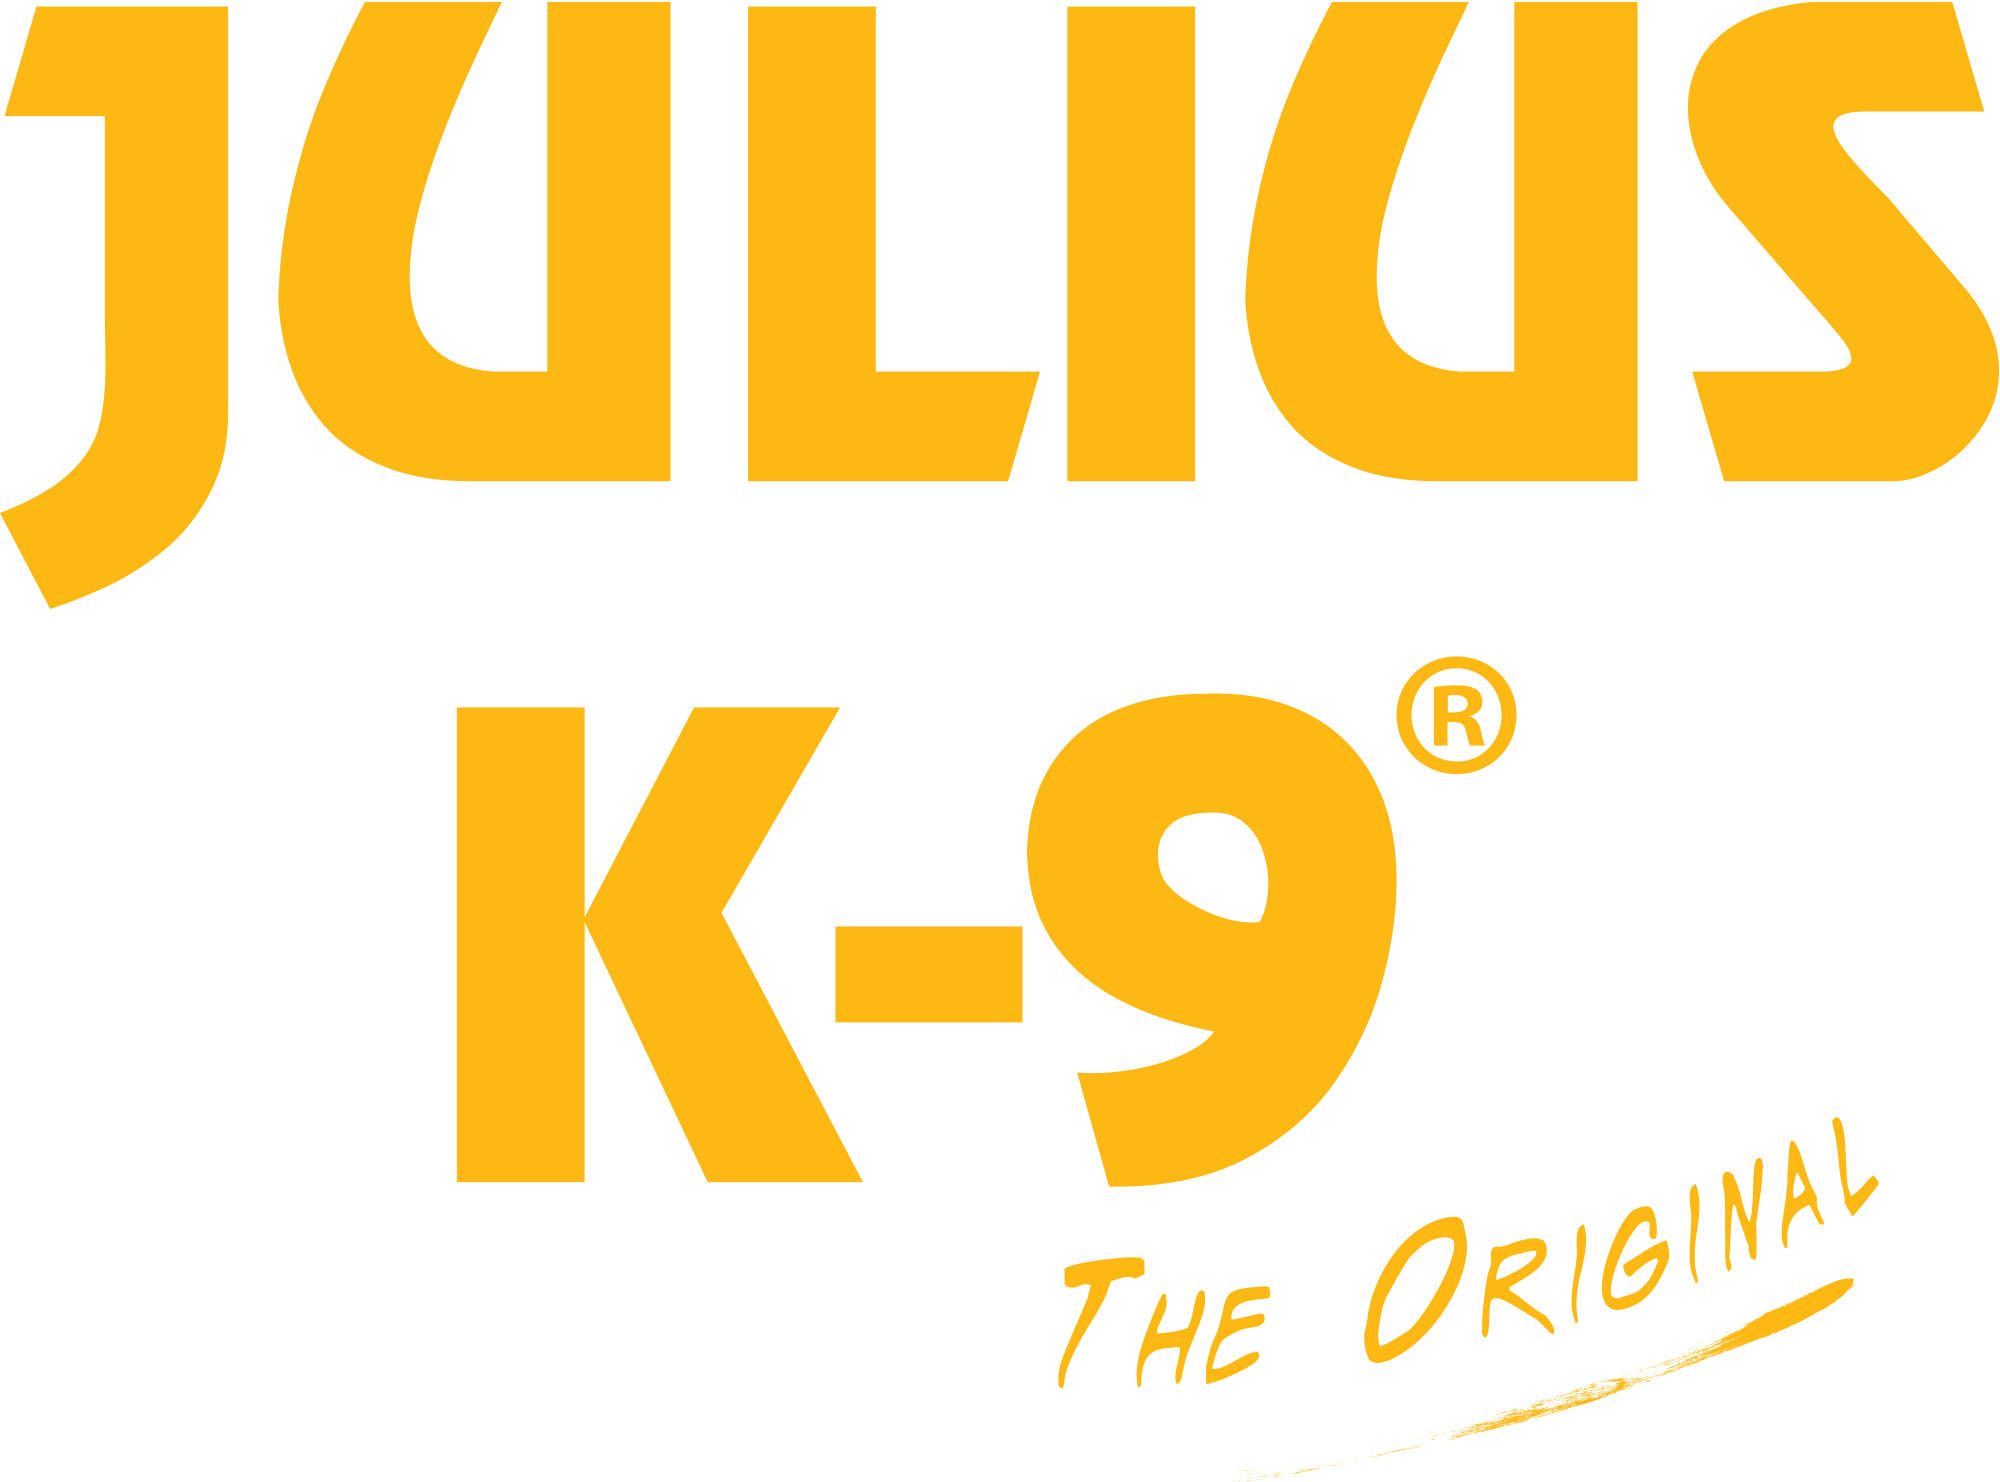 standard-logo-julius-k9